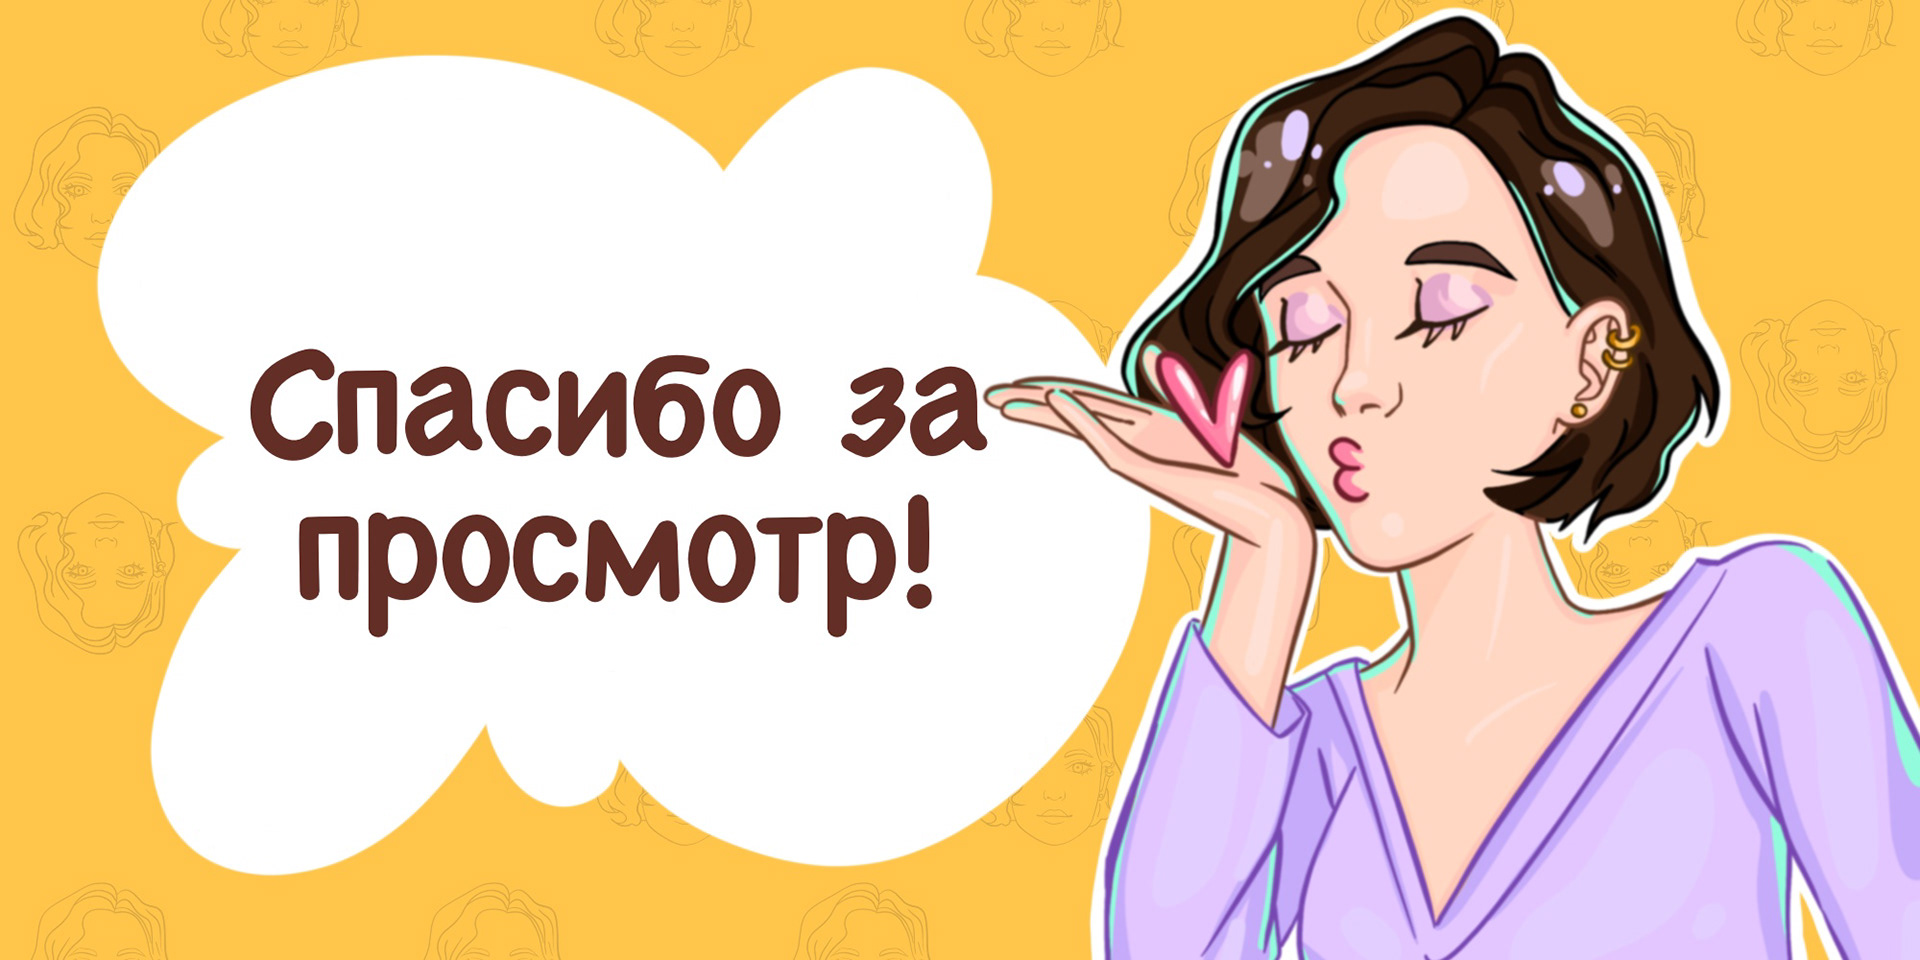 Стикеры для телеграмма анимированные скачать бесплатно без регистрации на телефон андроид на русском фото 25